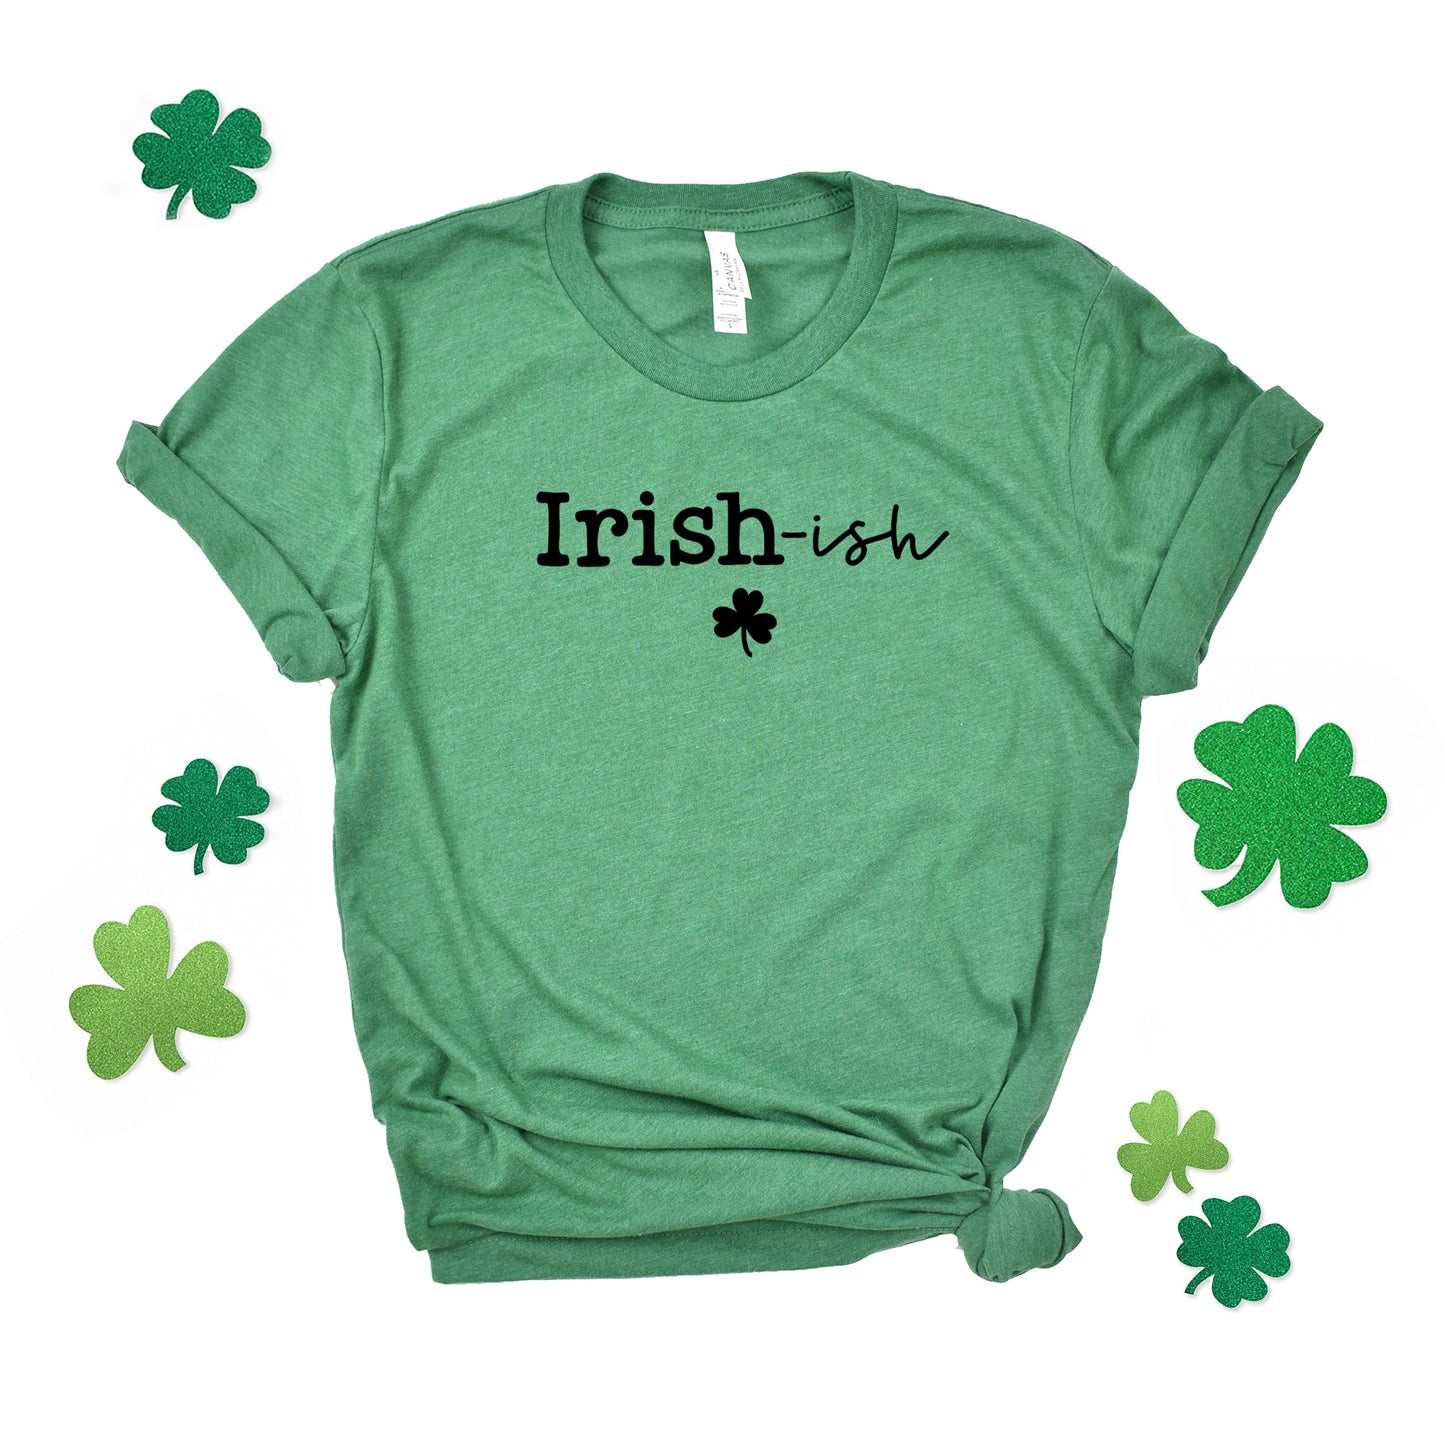 Irish-Ish | Short Sleeve Graphic Tee